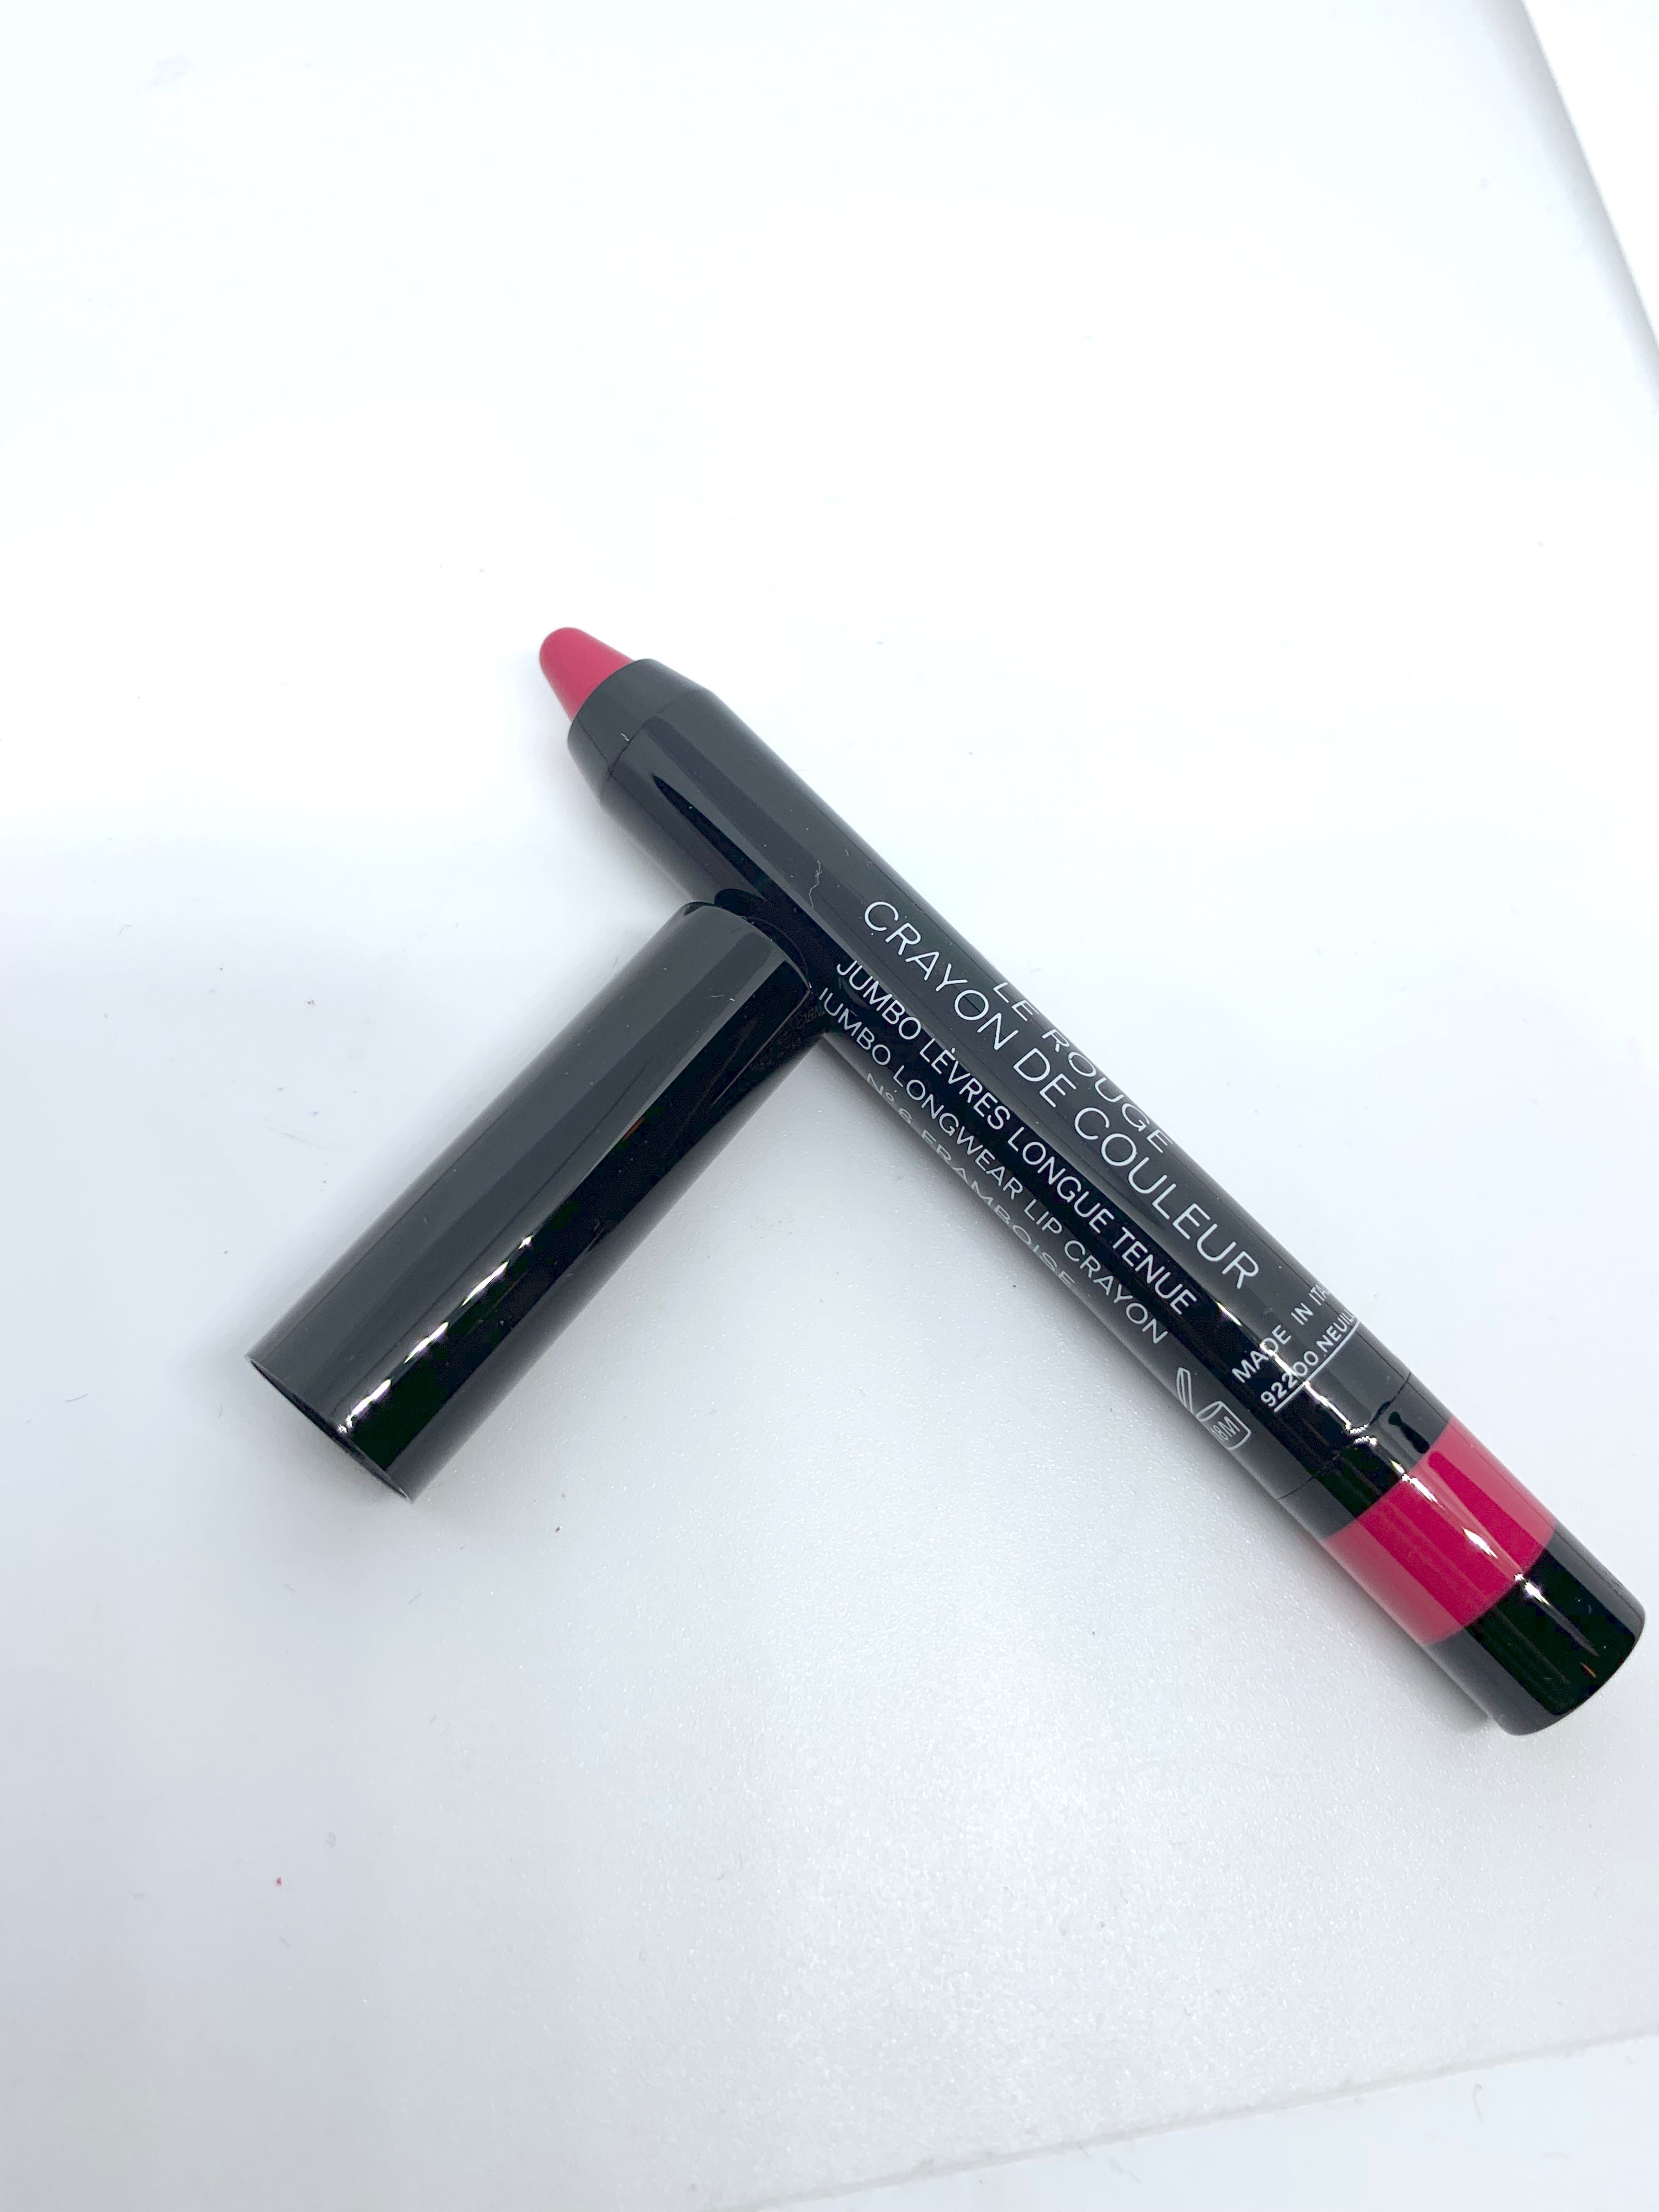 Chanel Le Rouge crayon de couleur #N6 Framboise, 美容＆化妝品